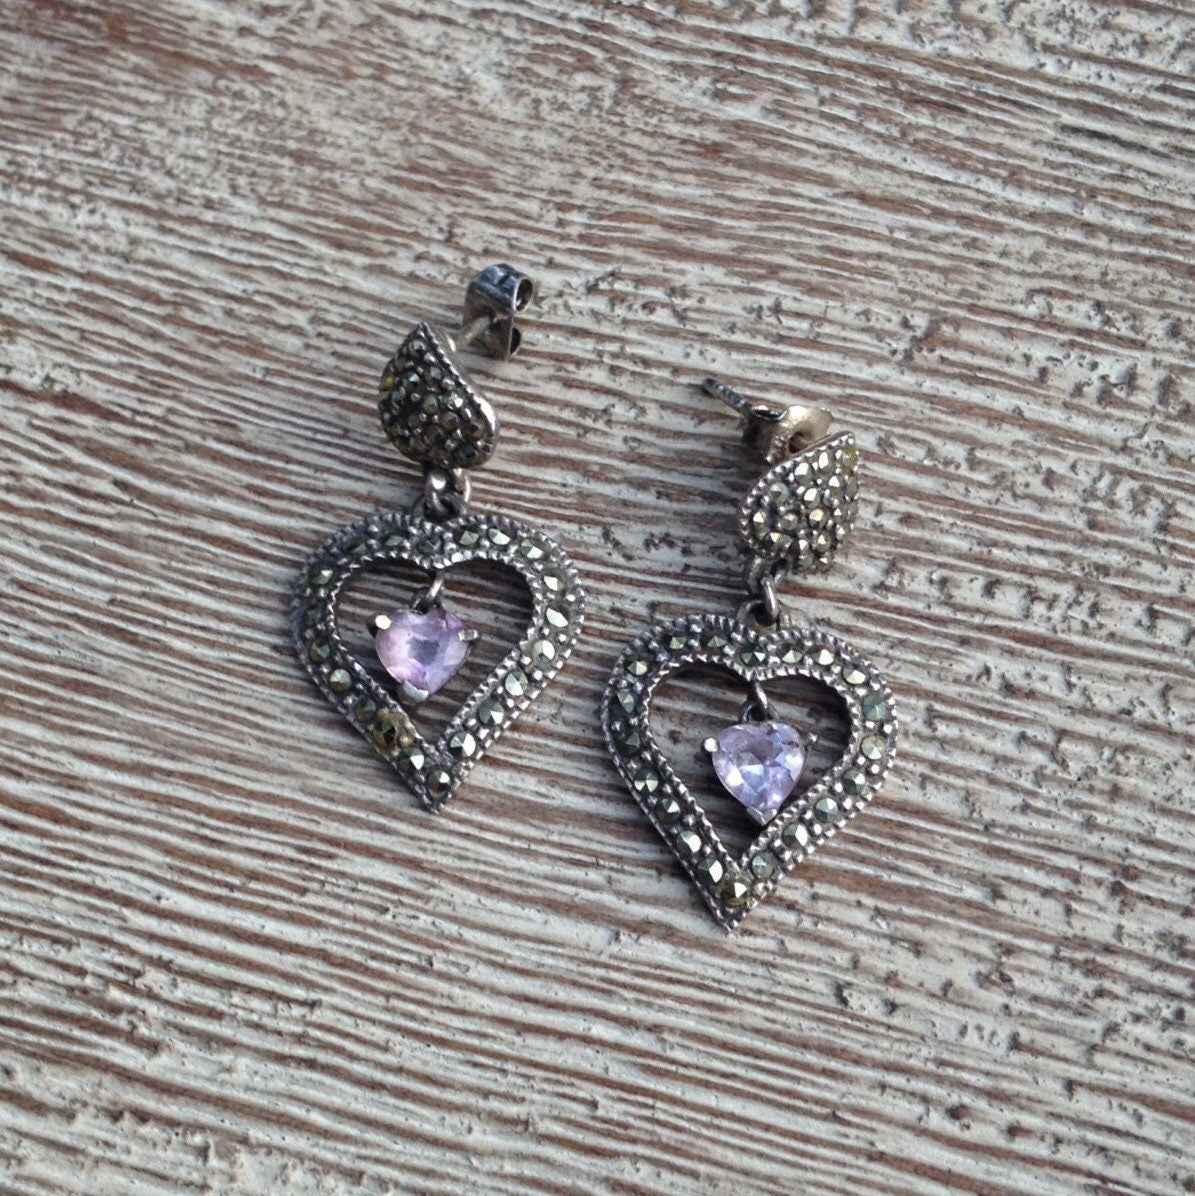 Vintage Silver Marcasite Heart Earrings | Amethyst Heart Drop Earrings